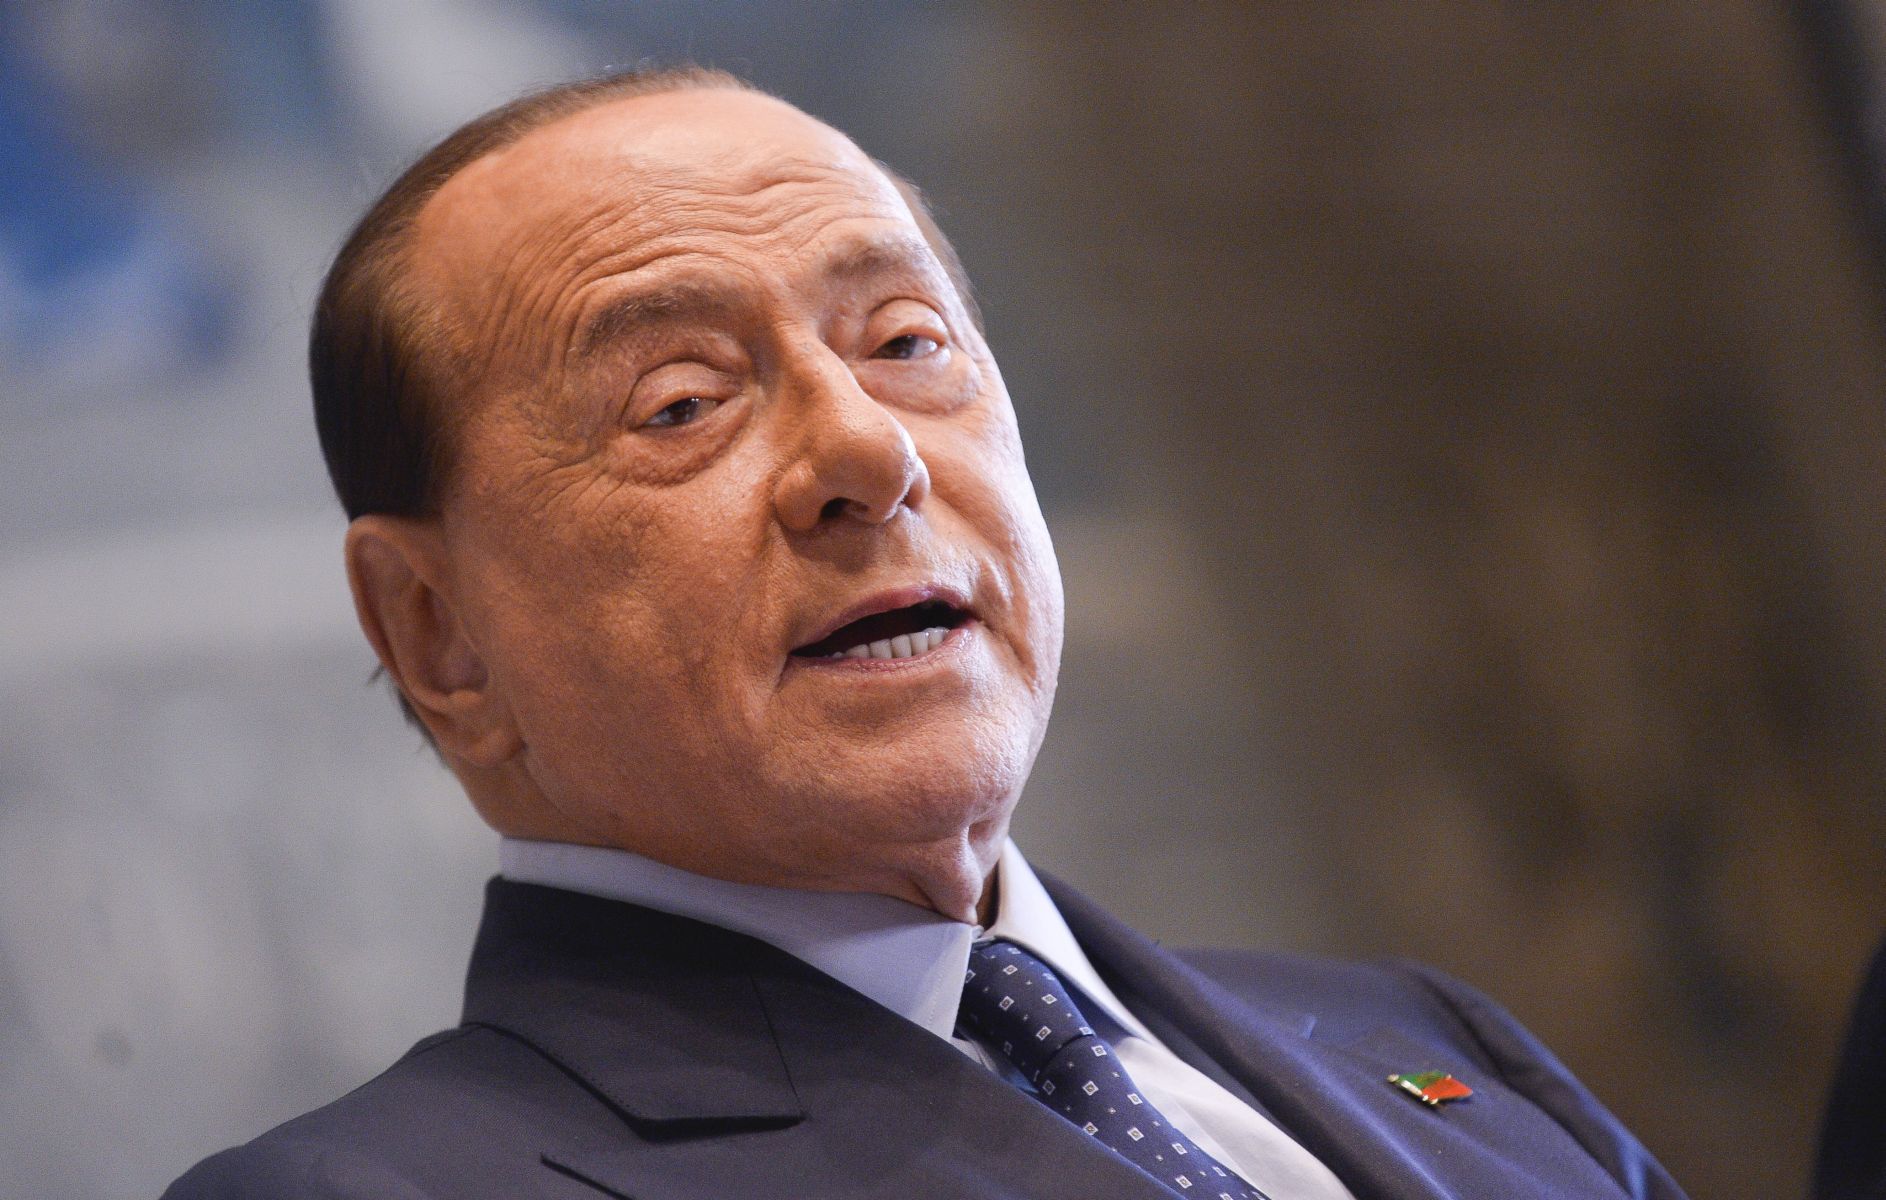 Berlusconi “stiamo selezionando candidati competenti per elezioni”